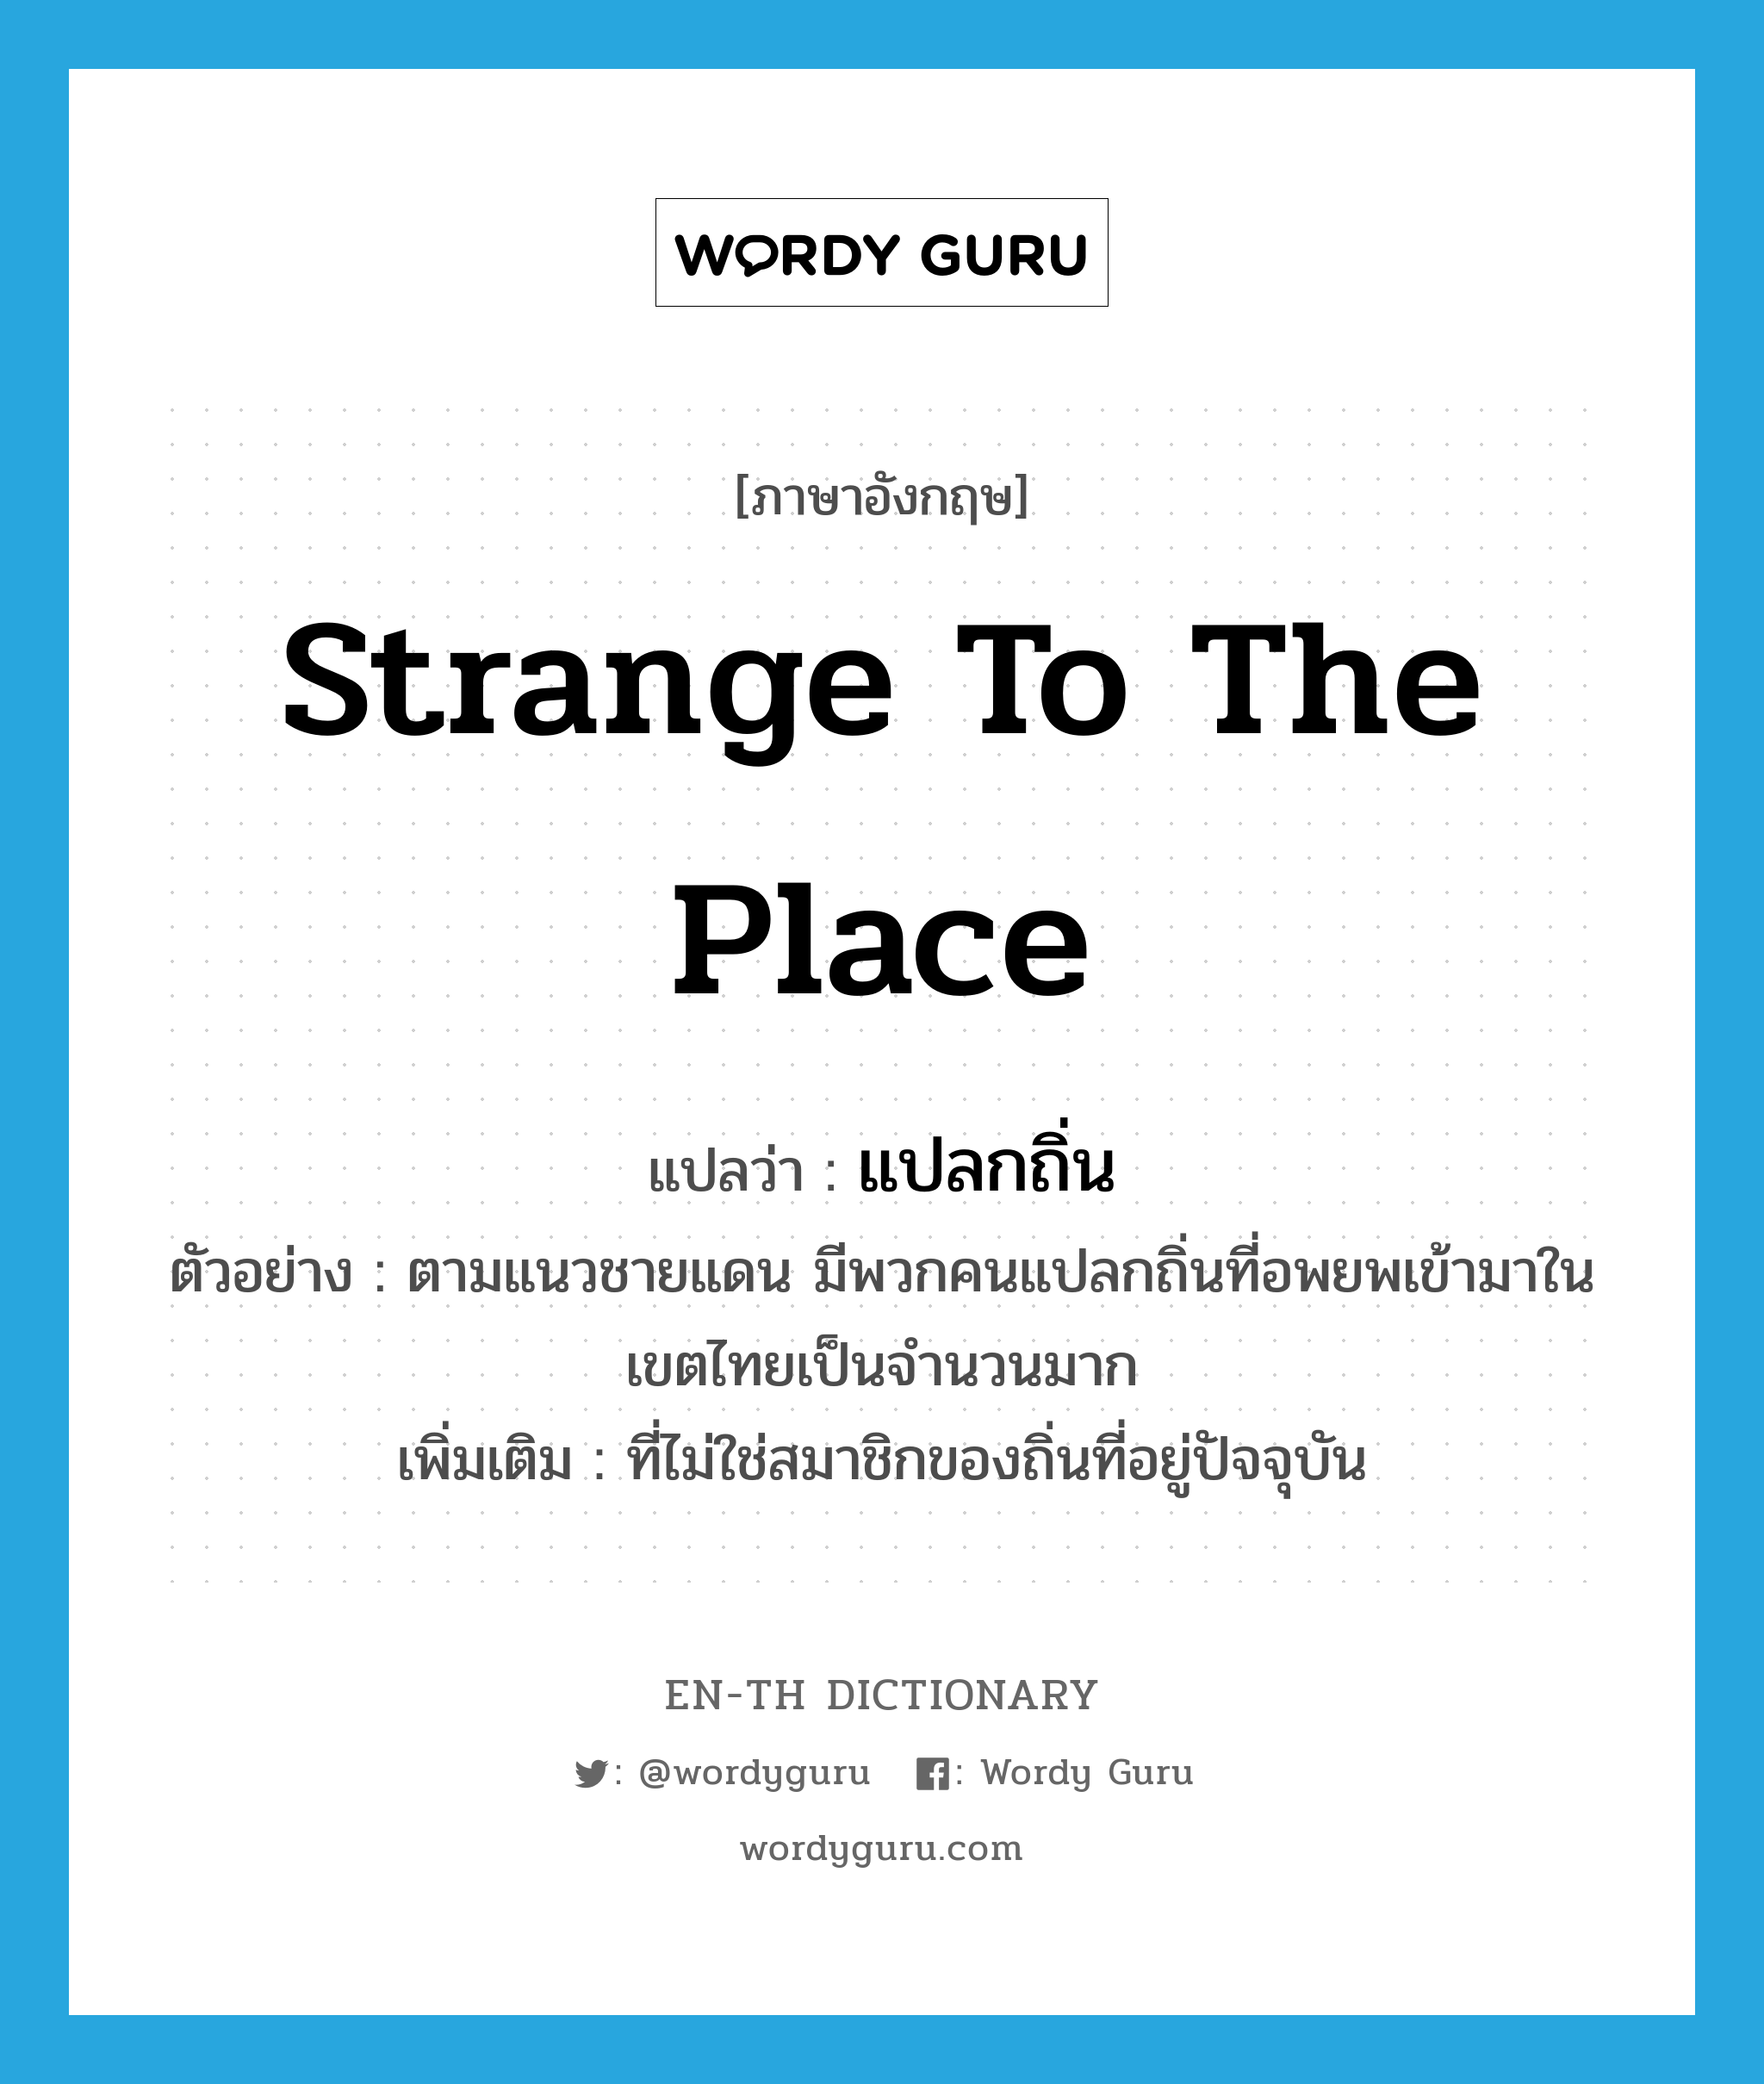 แปลกถิ่น ภาษาอังกฤษ?, คำศัพท์ภาษาอังกฤษ แปลกถิ่น แปลว่า strange to the place ประเภท ADJ ตัวอย่าง ตามแนวชายแดน มีพวกคนแปลกถิ่นที่อพยพเข้ามาในเขตไทยเป็นจำนวนมาก เพิ่มเติม ที่ไม่ใช่สมาชิกของถิ่นที่อยู่ปัจจุบัน หมวด ADJ